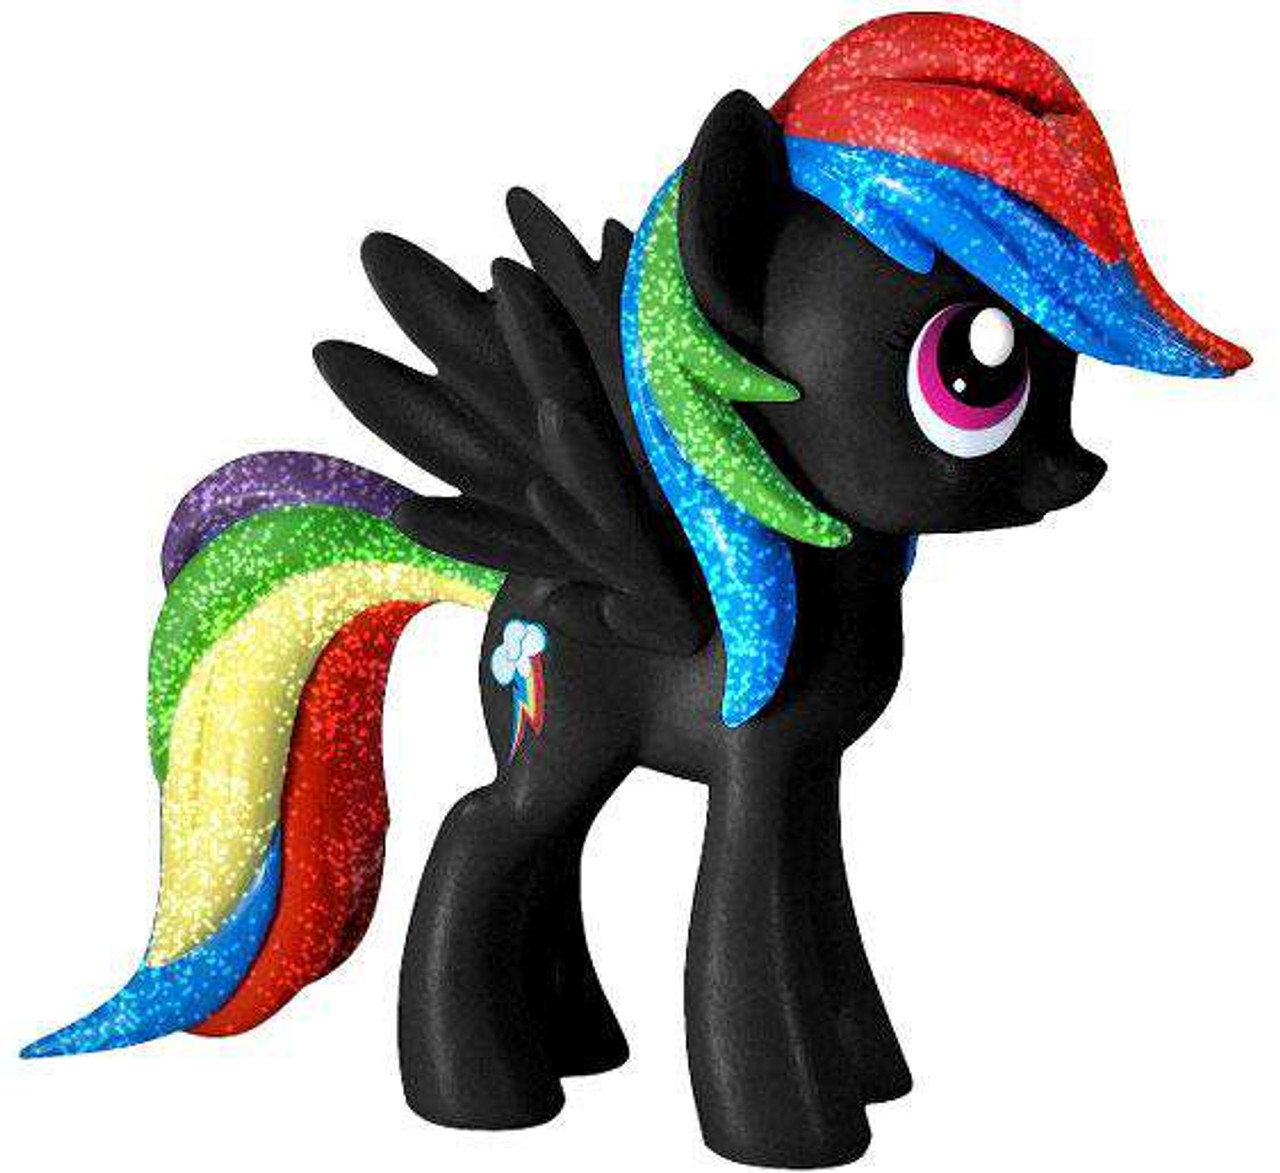 Литл пони черная. Пони Рейнбоу Дэш черная игрушка. Рейнбоу Дэш коллекционная фигурка. Пони фигурка Рейнбоу Дэш. Игрушка my little Pony пони Рейнбоу Дэш.